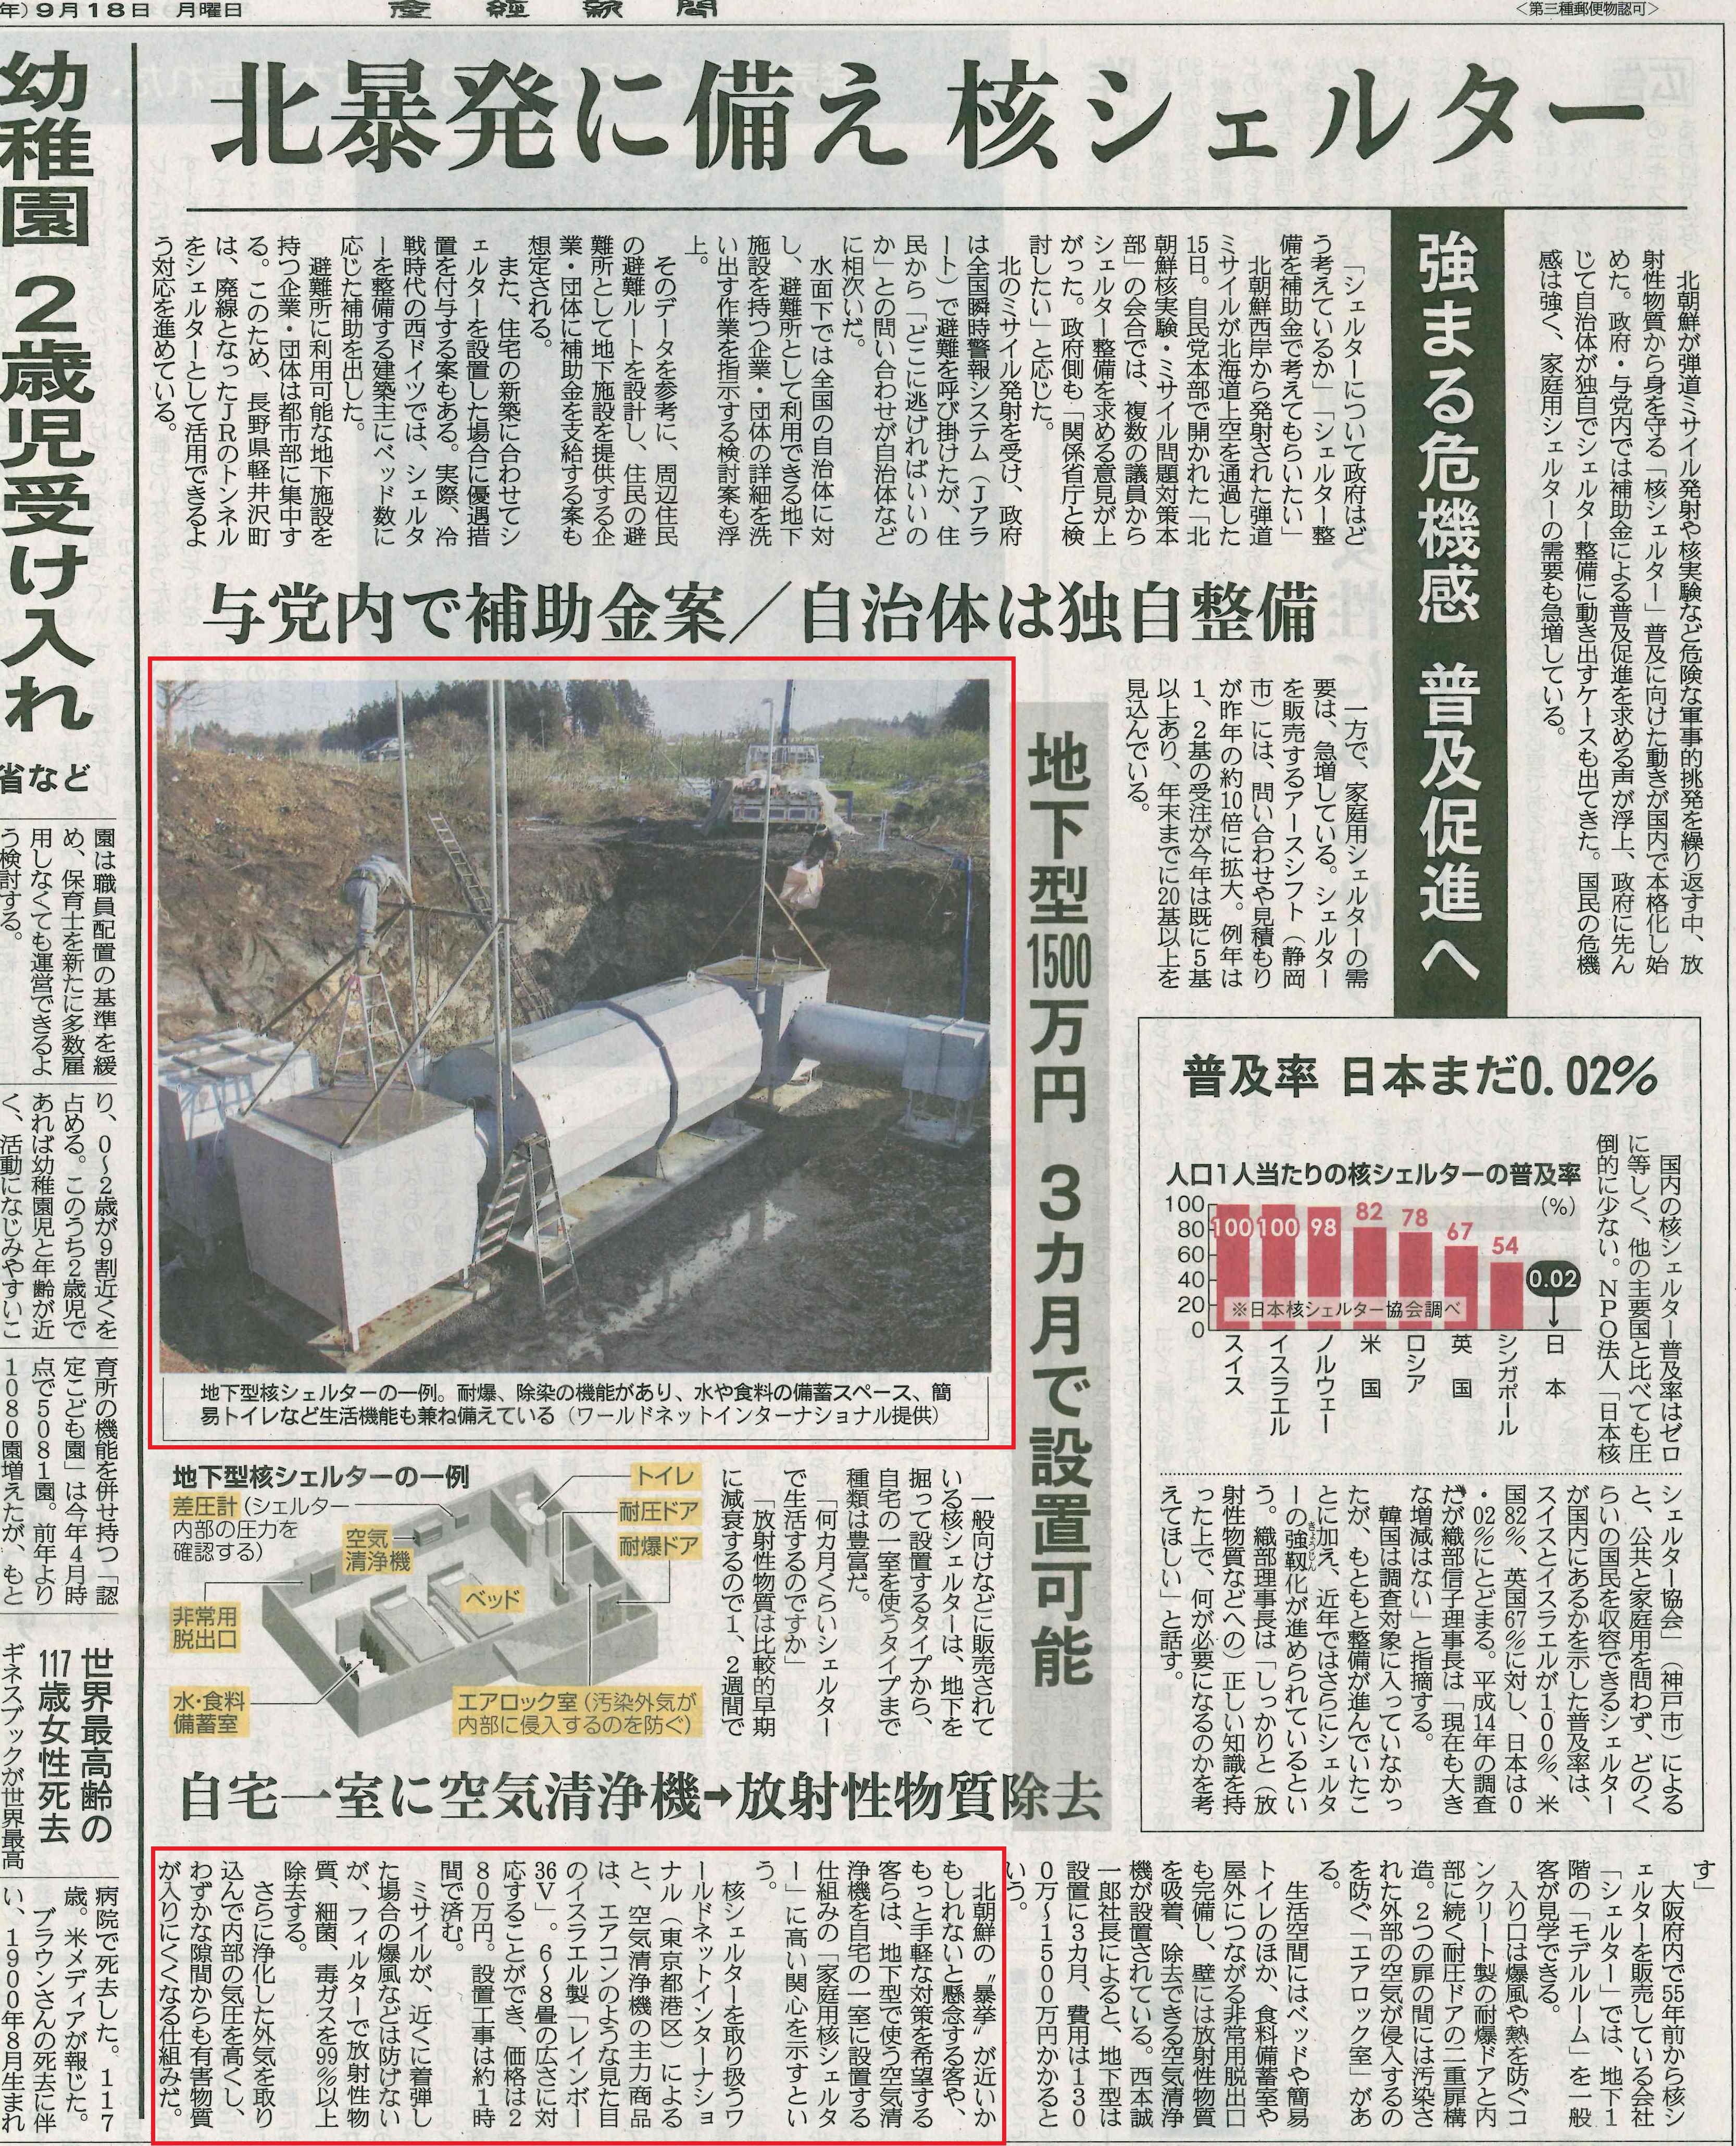 産経新聞に弊社地下シェルターとレインボー36Vの記事が掲載されました